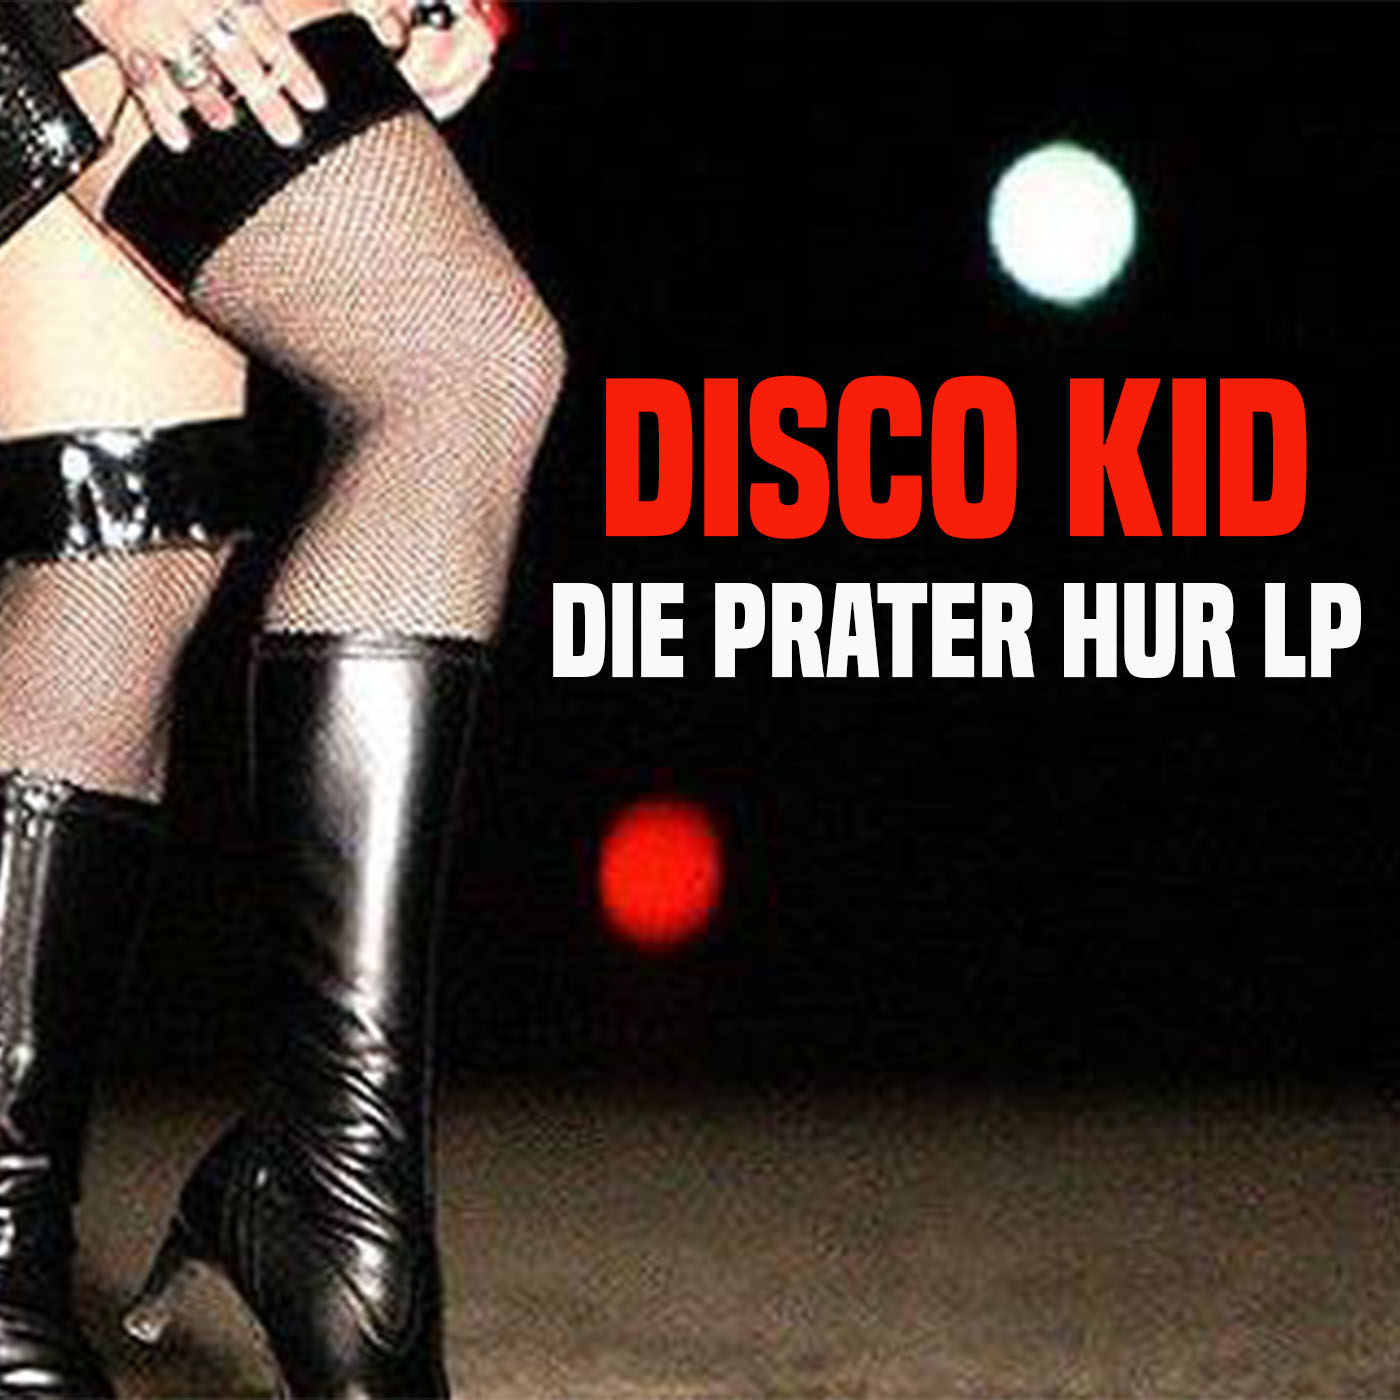 DISCO KID - Plandemie in den Arsch (Extended DIsco Swing)